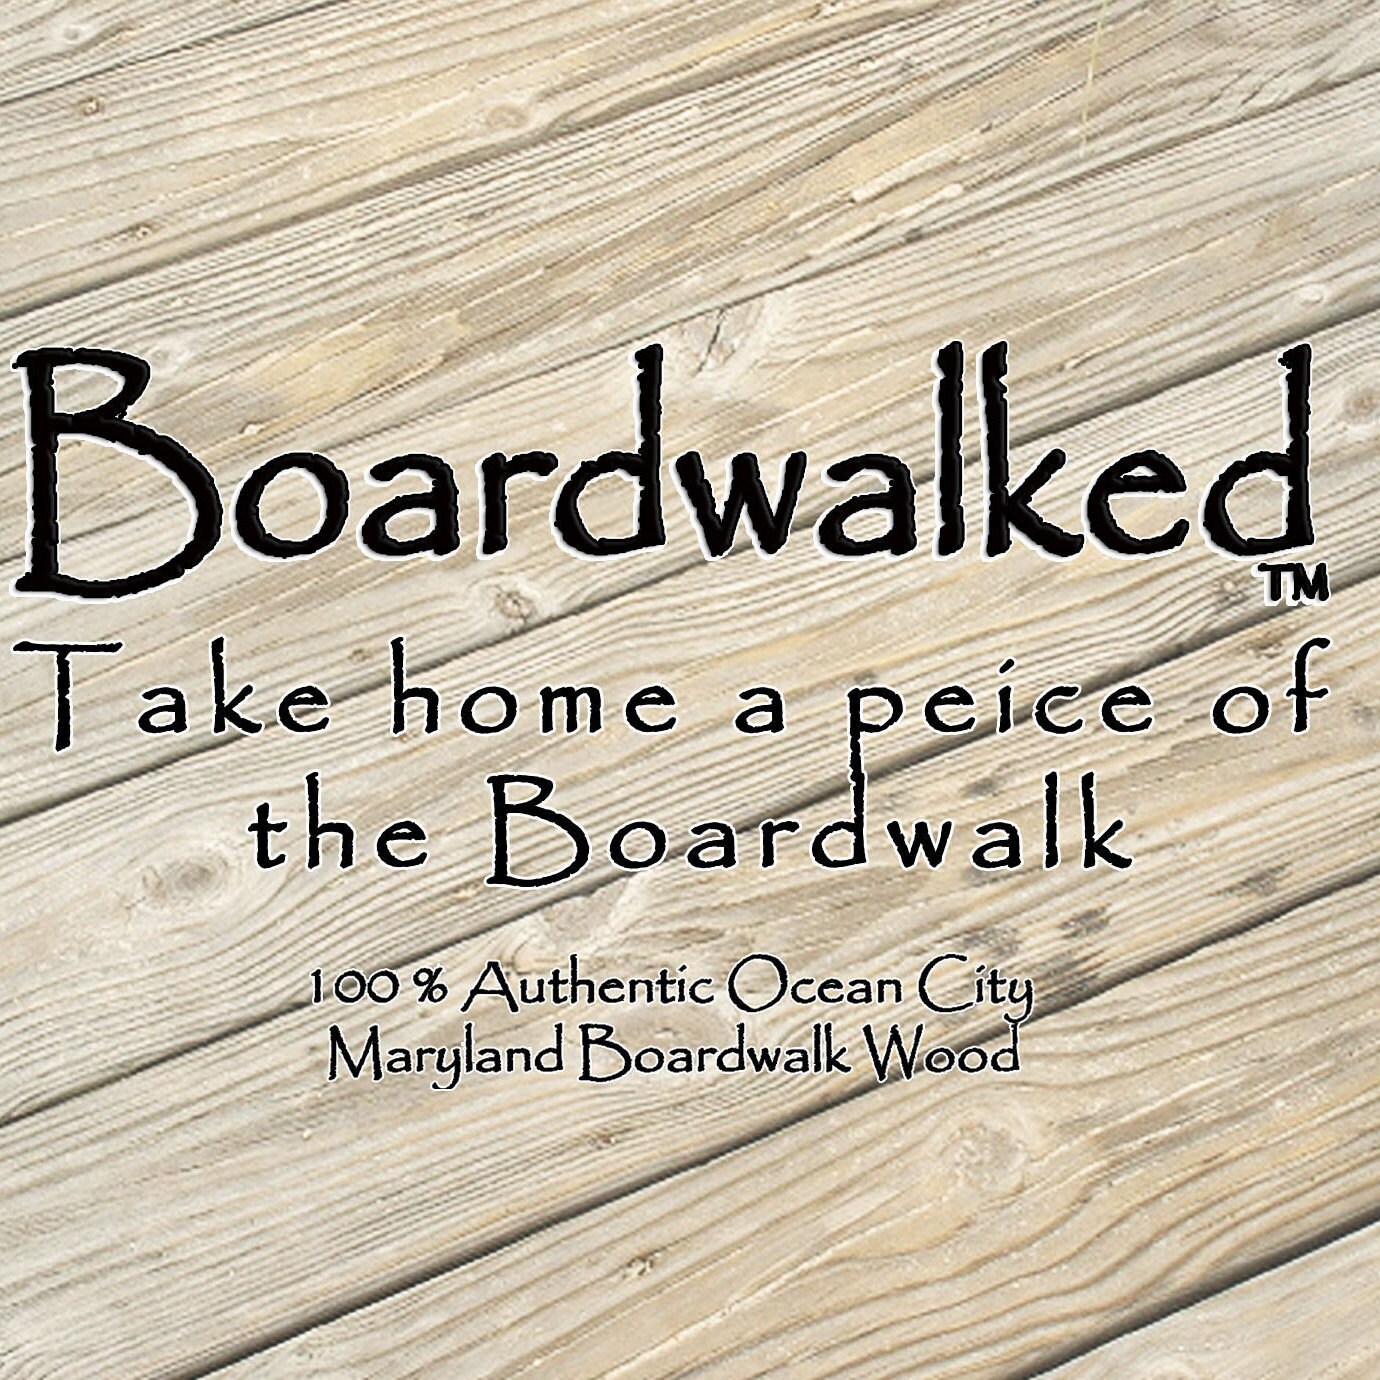 Boardwalked